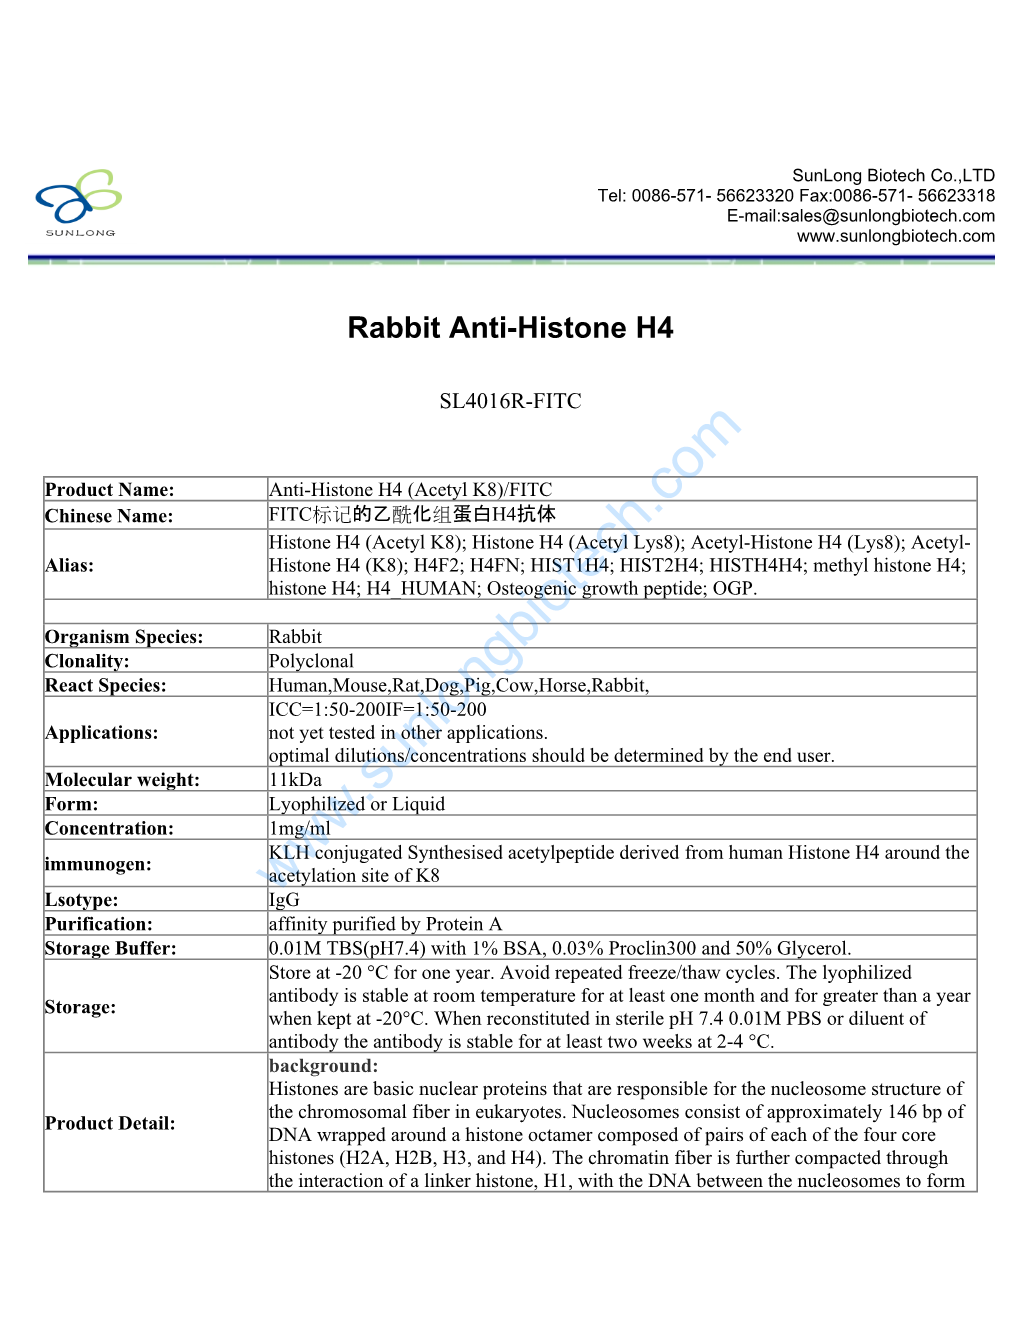 Rabbit Anti-Histone H4-SL4016R-FITC